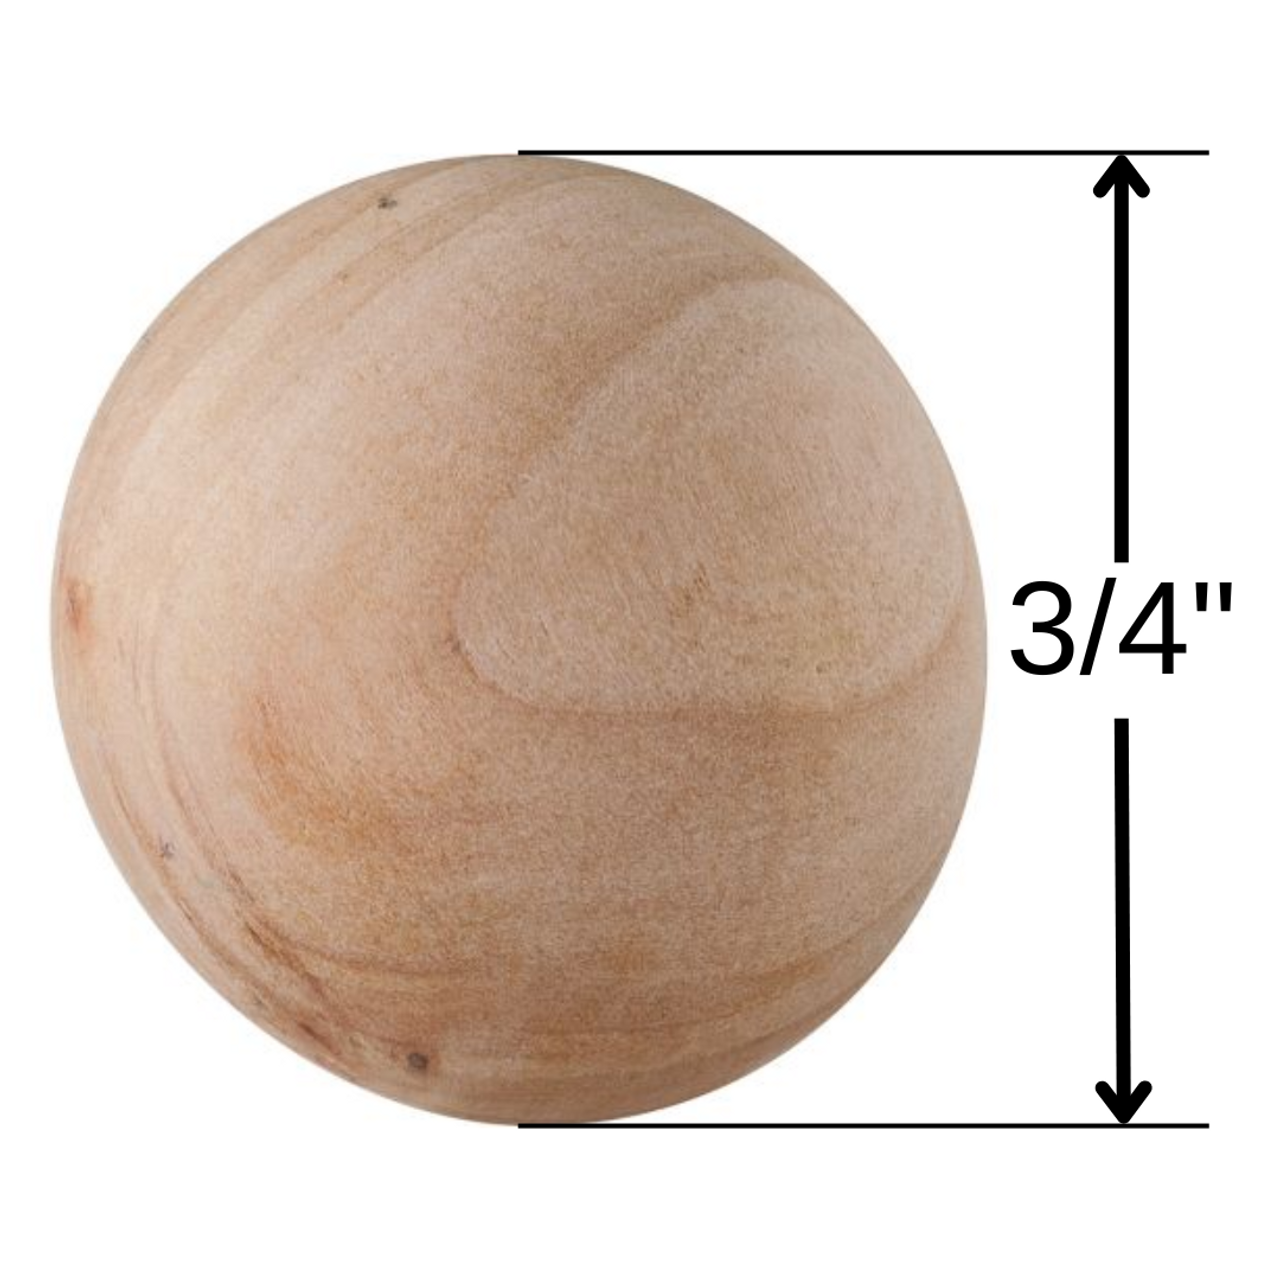 3/4 inch Wooden Balls 